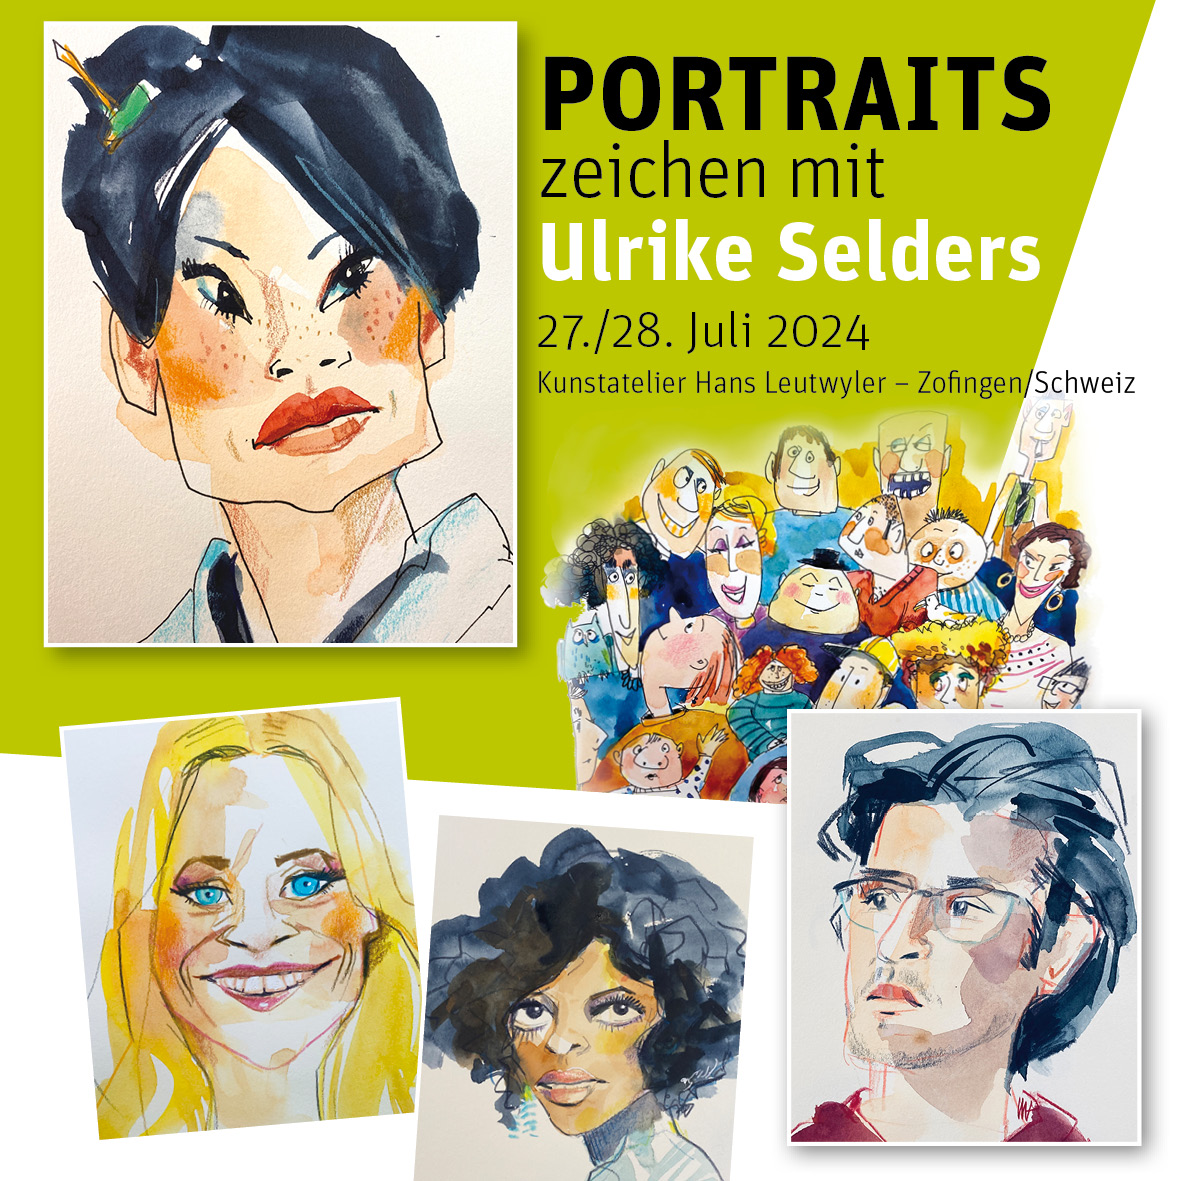 Portraits zeichnen mit Ulrike Selders